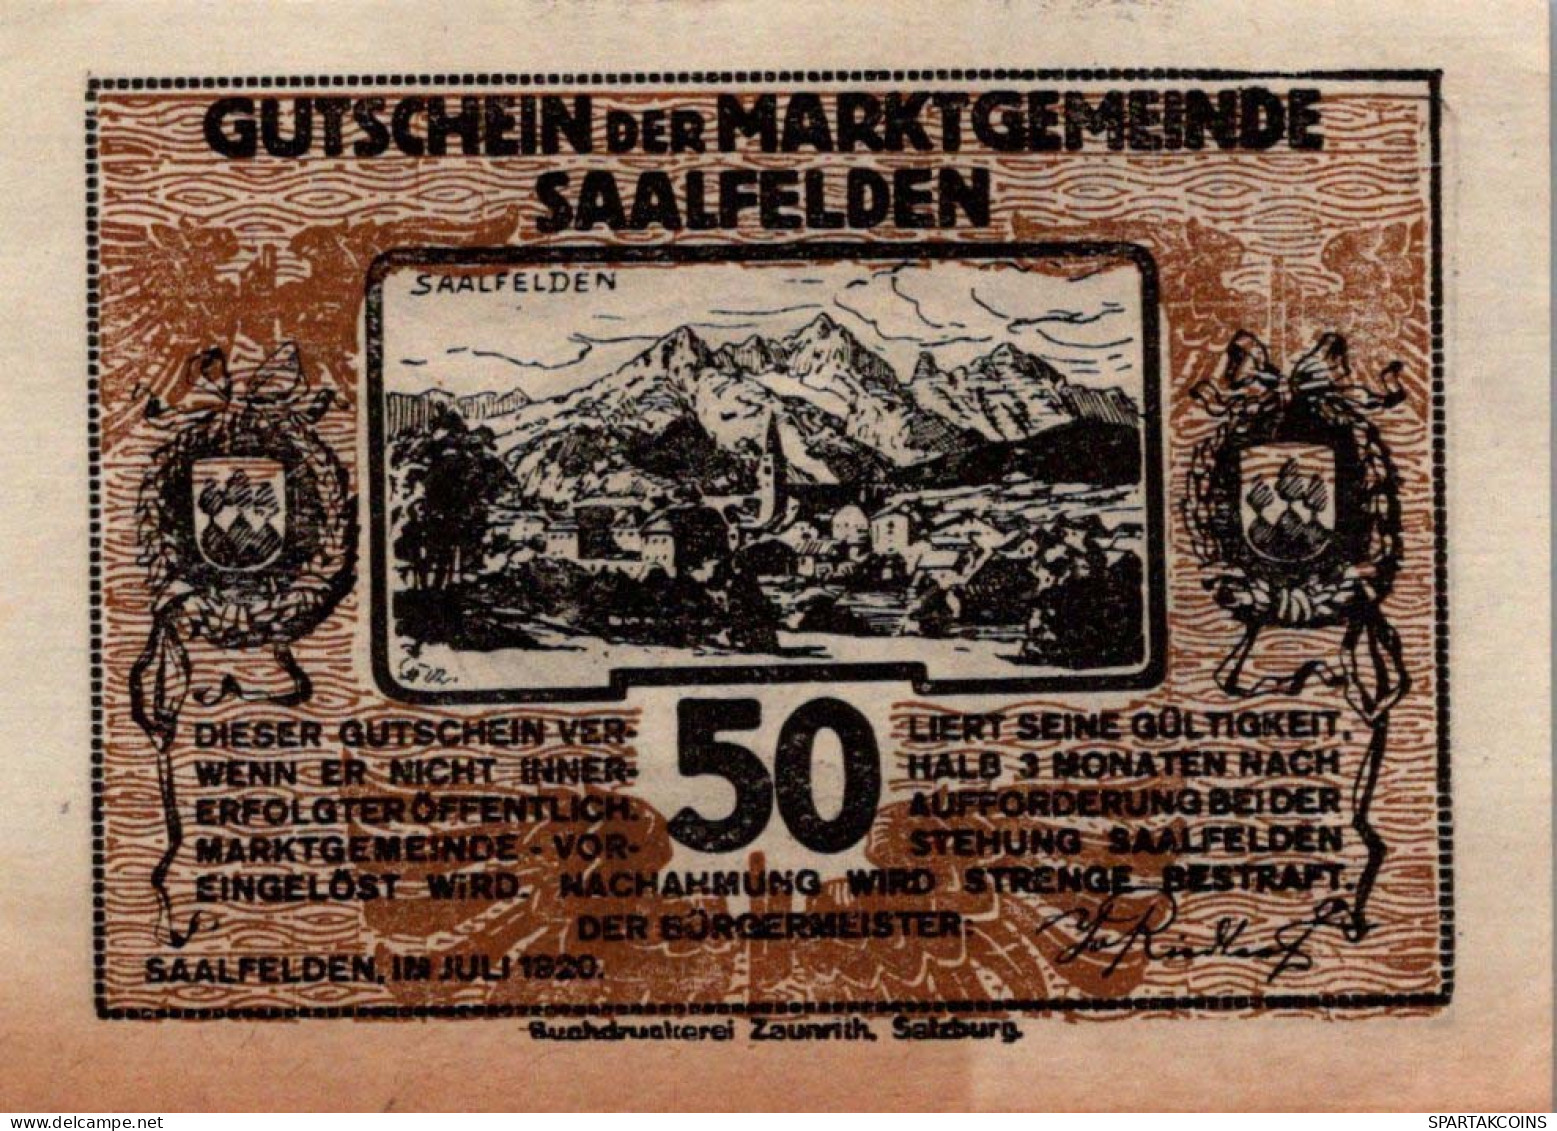 50 HELLER 1920 Stadt SAALFELDEN Salzburg Österreich Notgeld Banknote #PF206 - [11] Local Banknote Issues